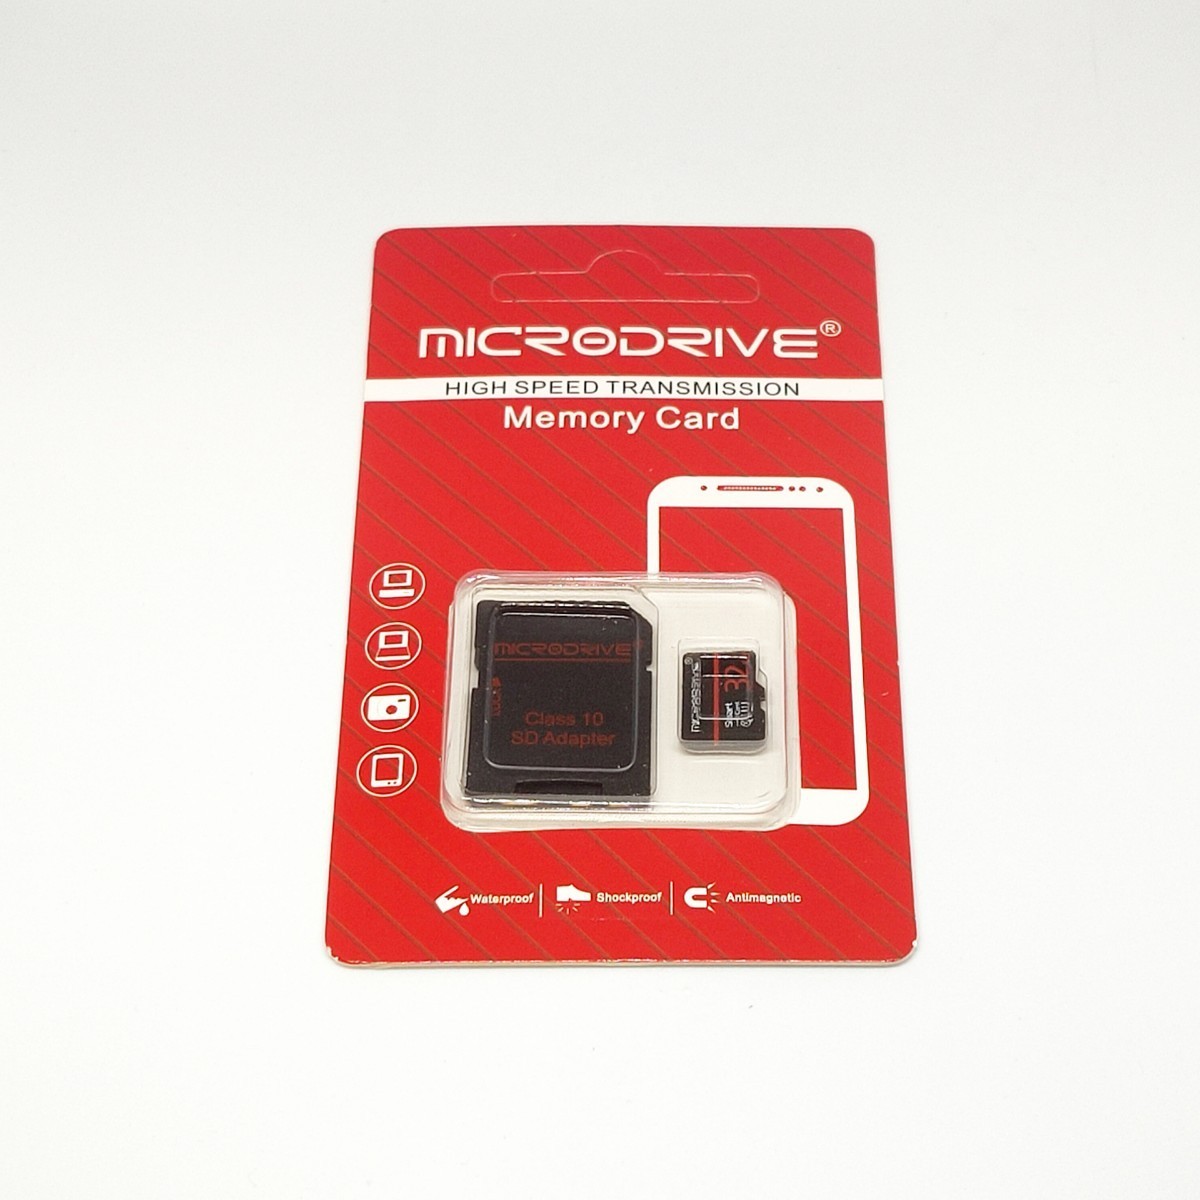 マイクロSDカード 32GB 1枚 class10 UHS-I対応 MICRODRIVE BLACK-RED-BLACK